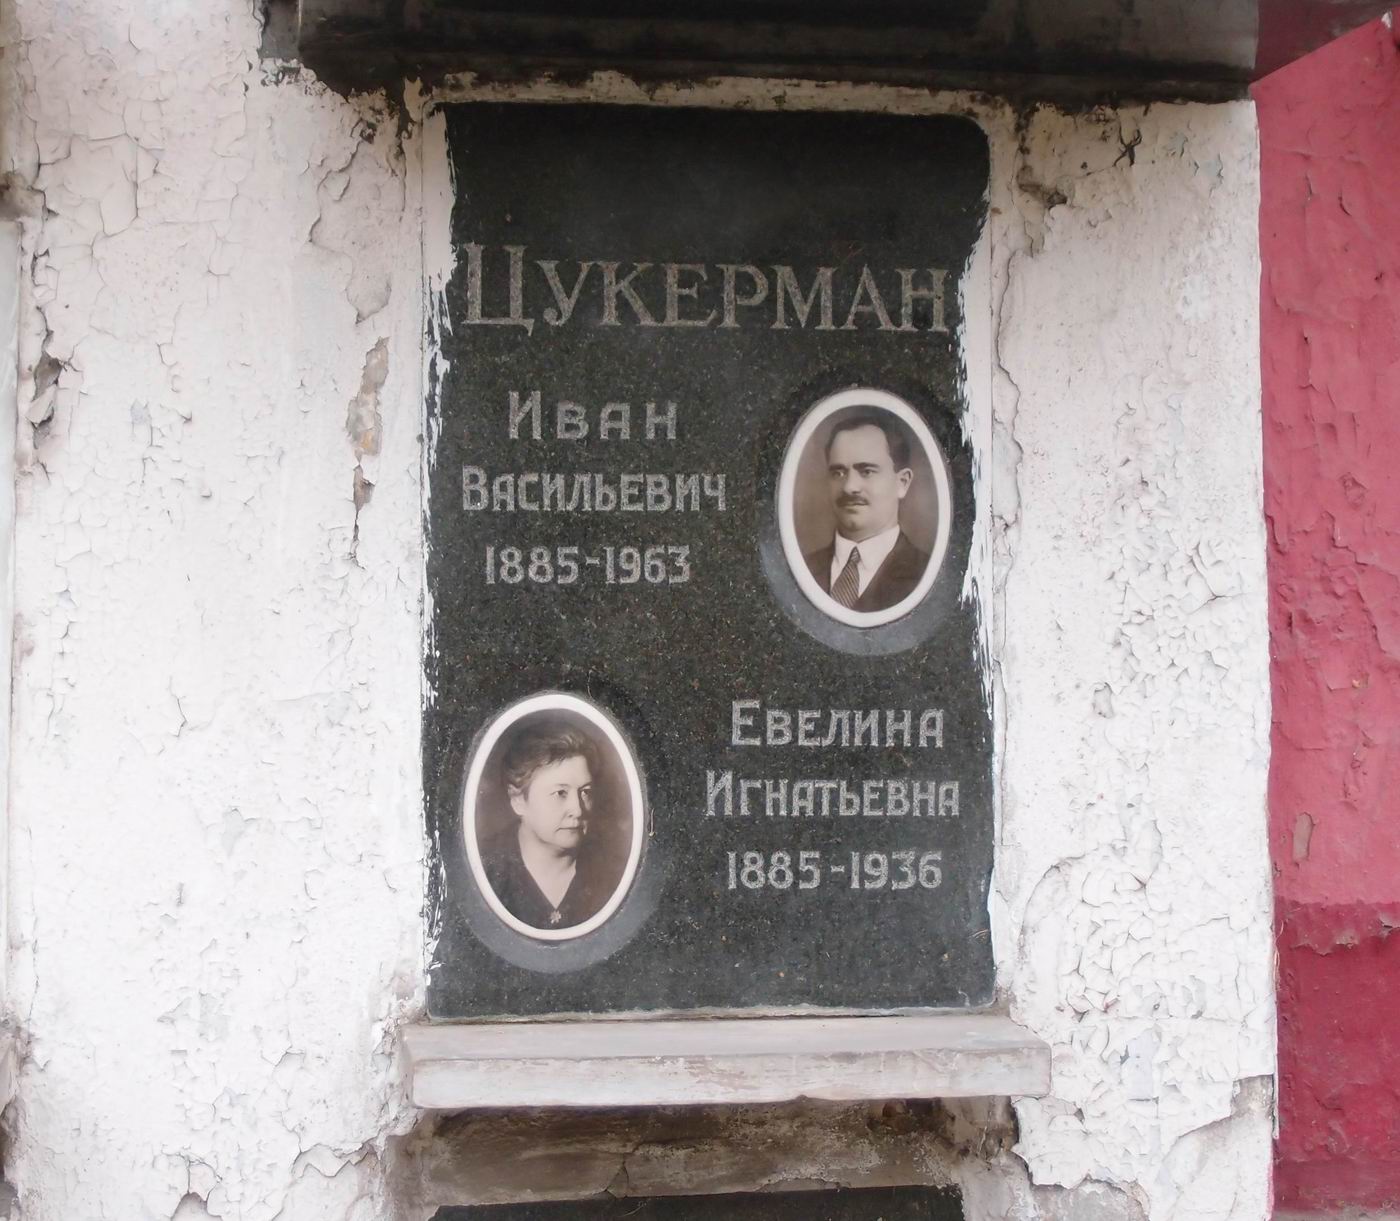 Плита на нише Цукермана И.В. (1885-1963), на Новодевичьем кладбище (колумбарий [23]-5-2).